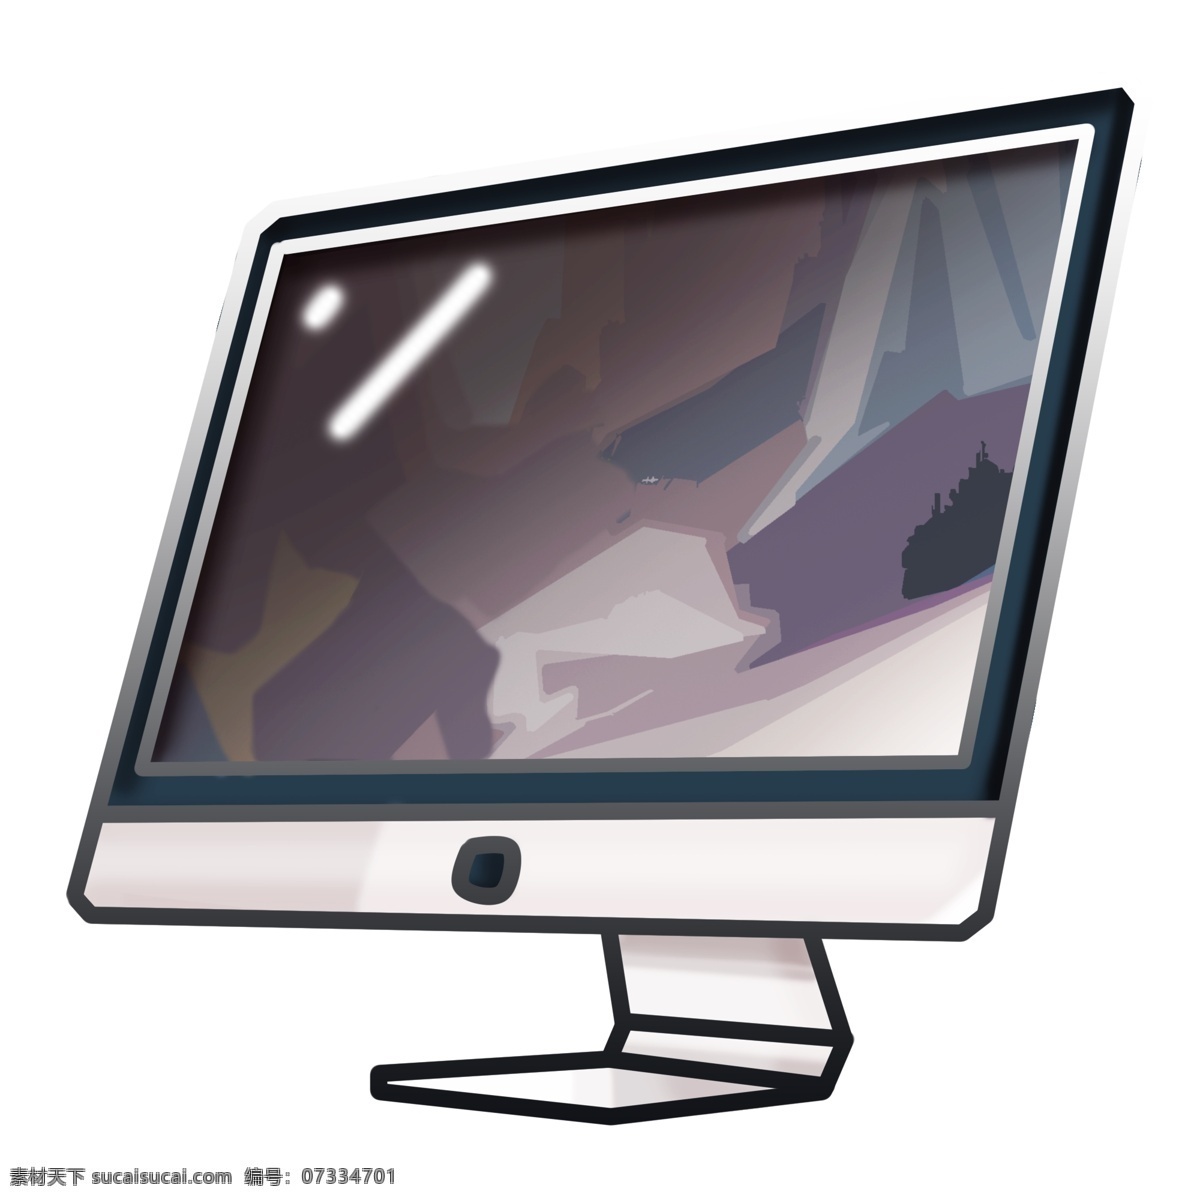 手绘 卡通 电脑 显示屏 插画 手绘显示屏 卡通显示屏 家电 灰色显示屏 家用电脑 家用电器